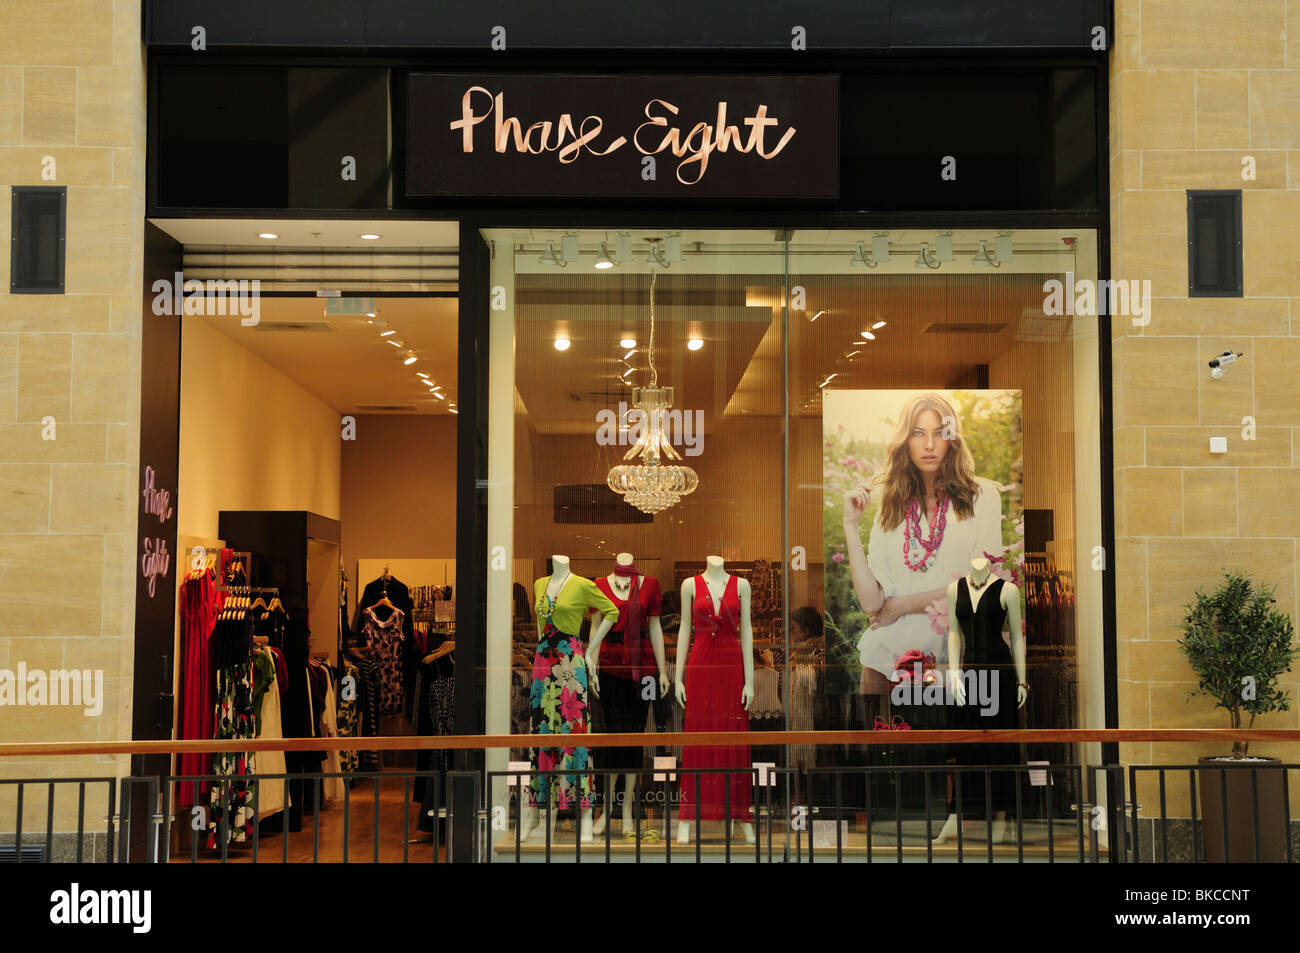 La tienda de ropa de la fase 8, el centro comercial Grand Arcade, Cambridge, Inglaterra, Reino Unido. Foto de stock